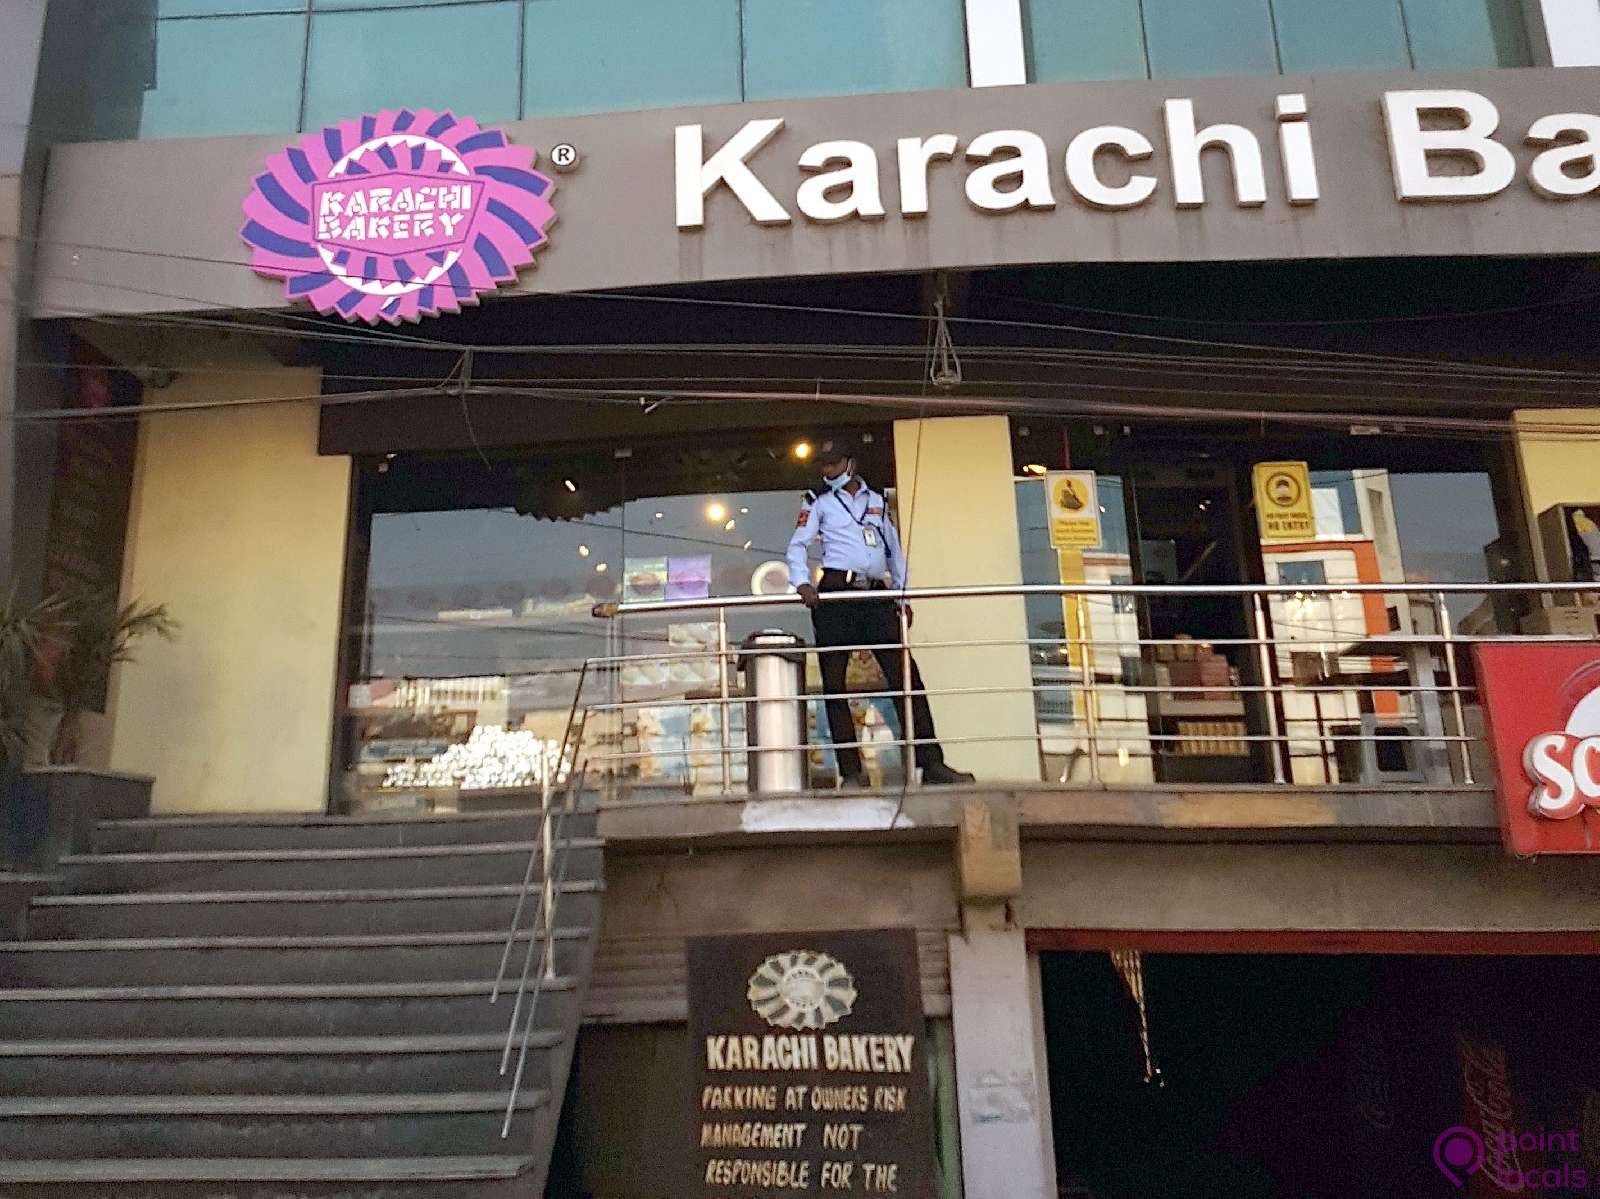 An eggless cake always available - Reviews, Photos - Karachi Bakery -  Tripadvisor